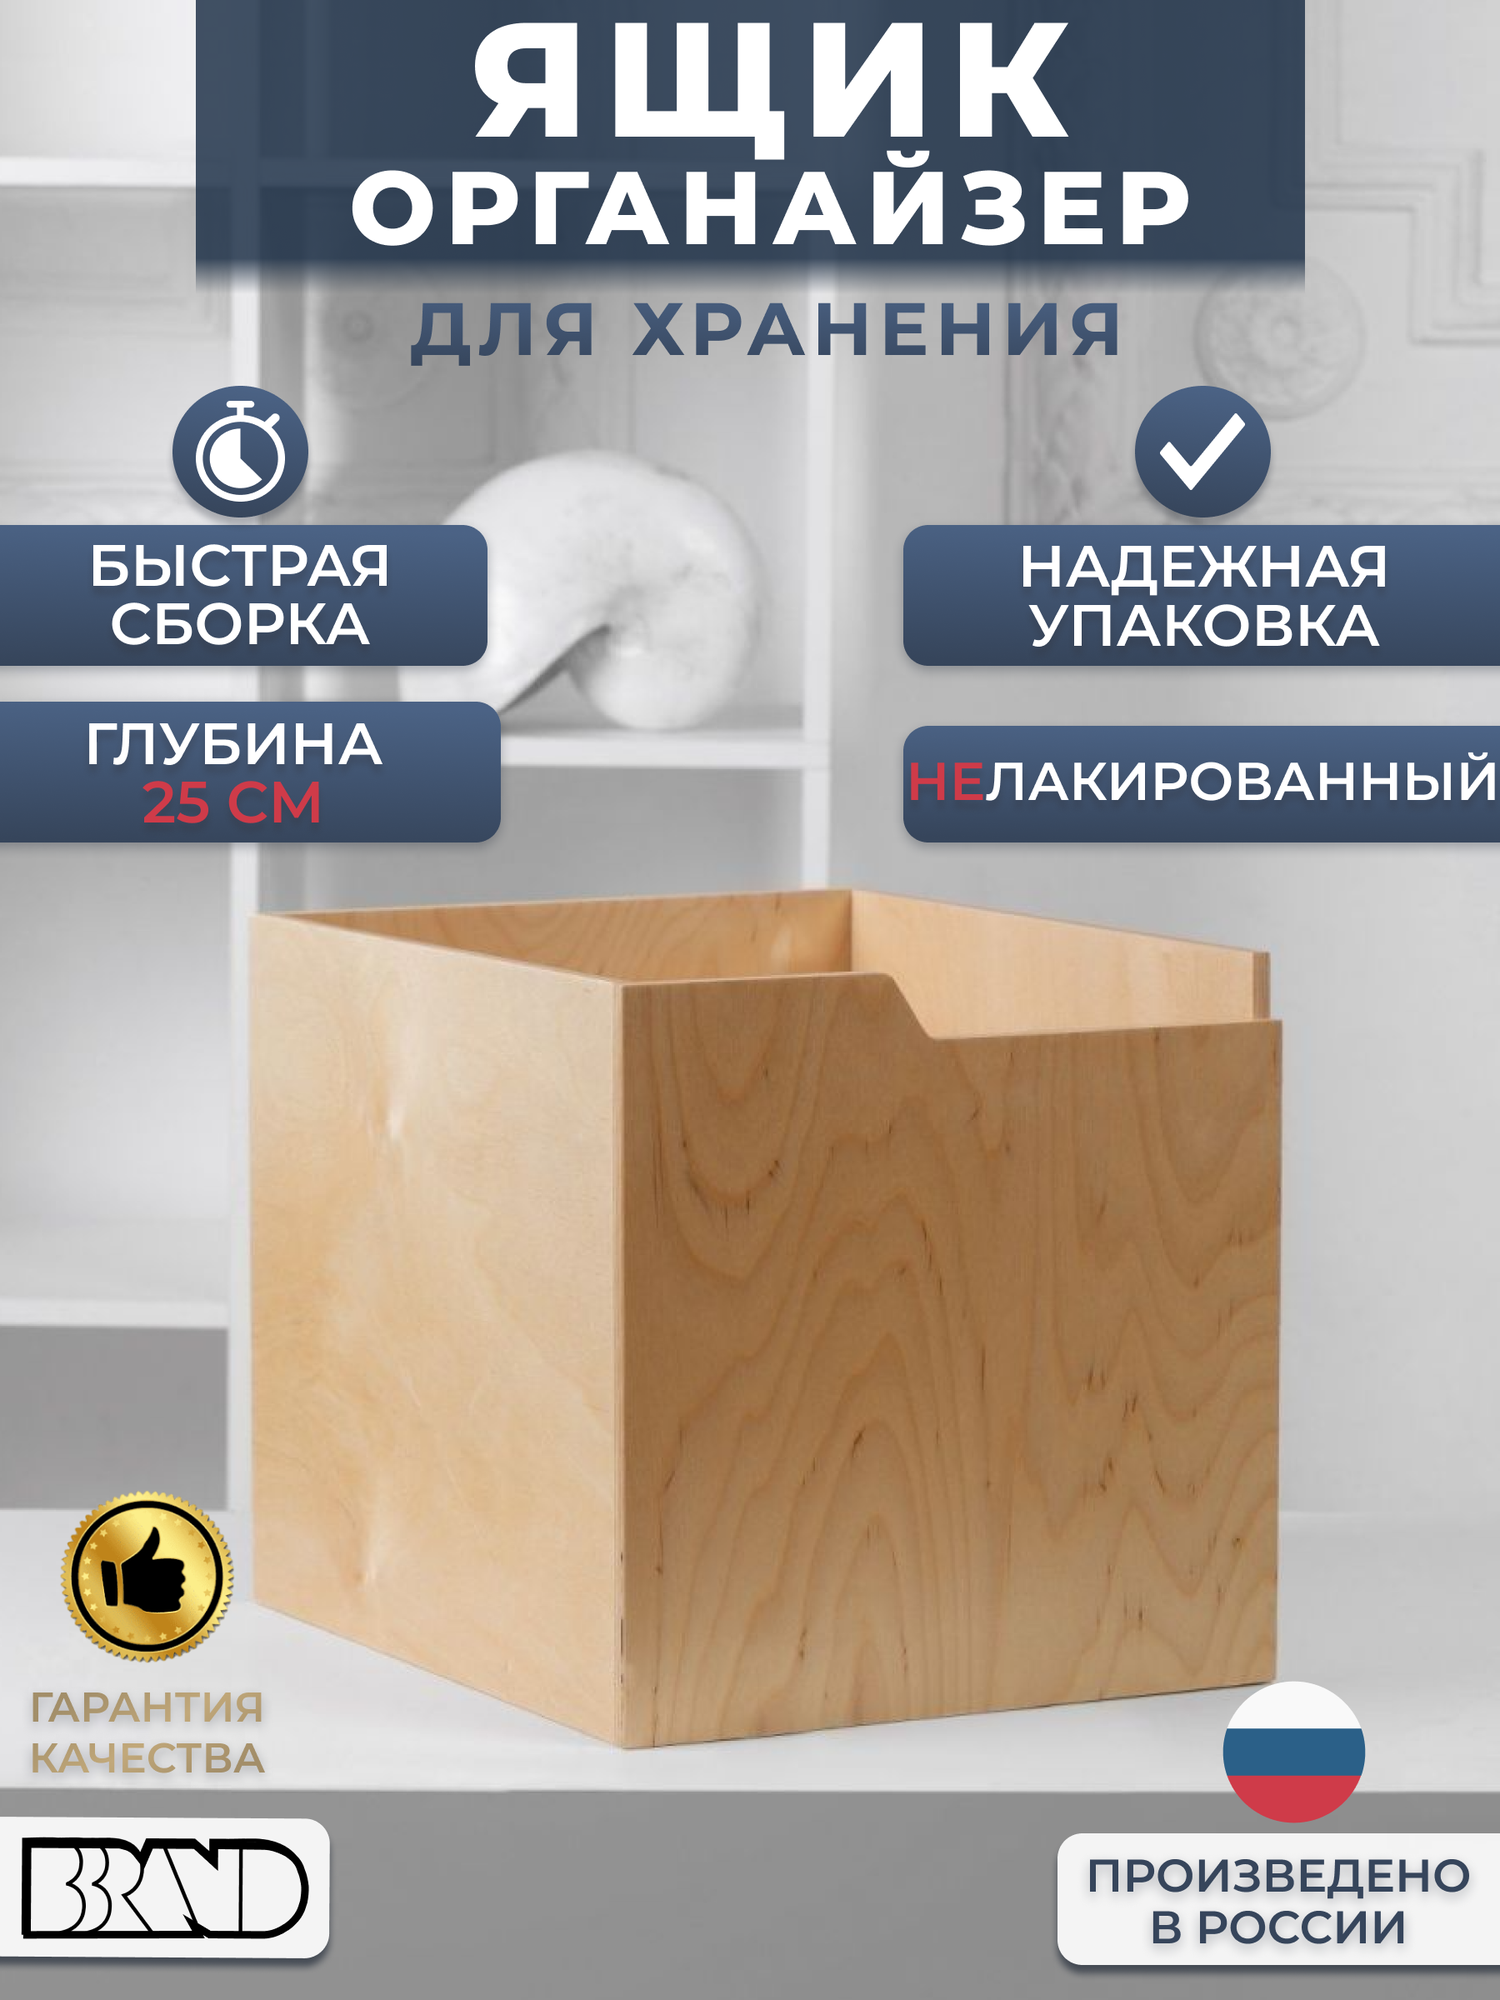 Коробка деревянная органайзер для хранения вещей